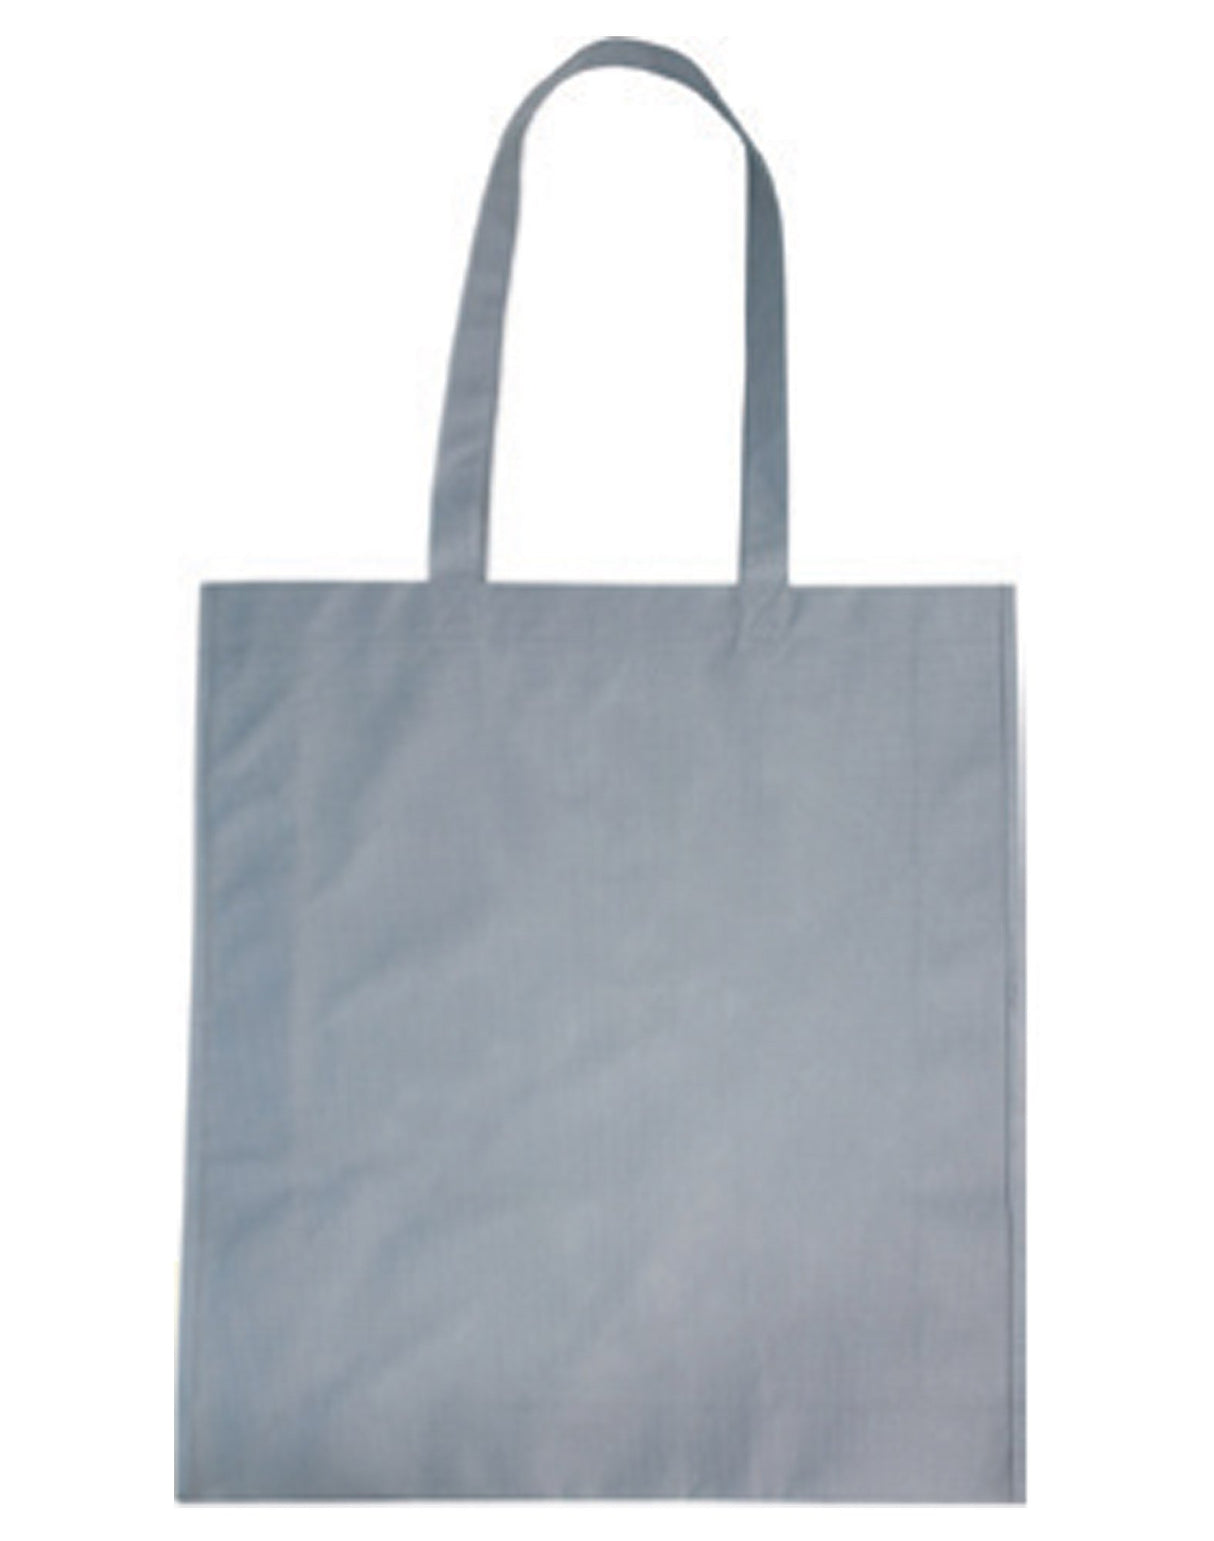 Grey tote bags, Gray Tote Bags